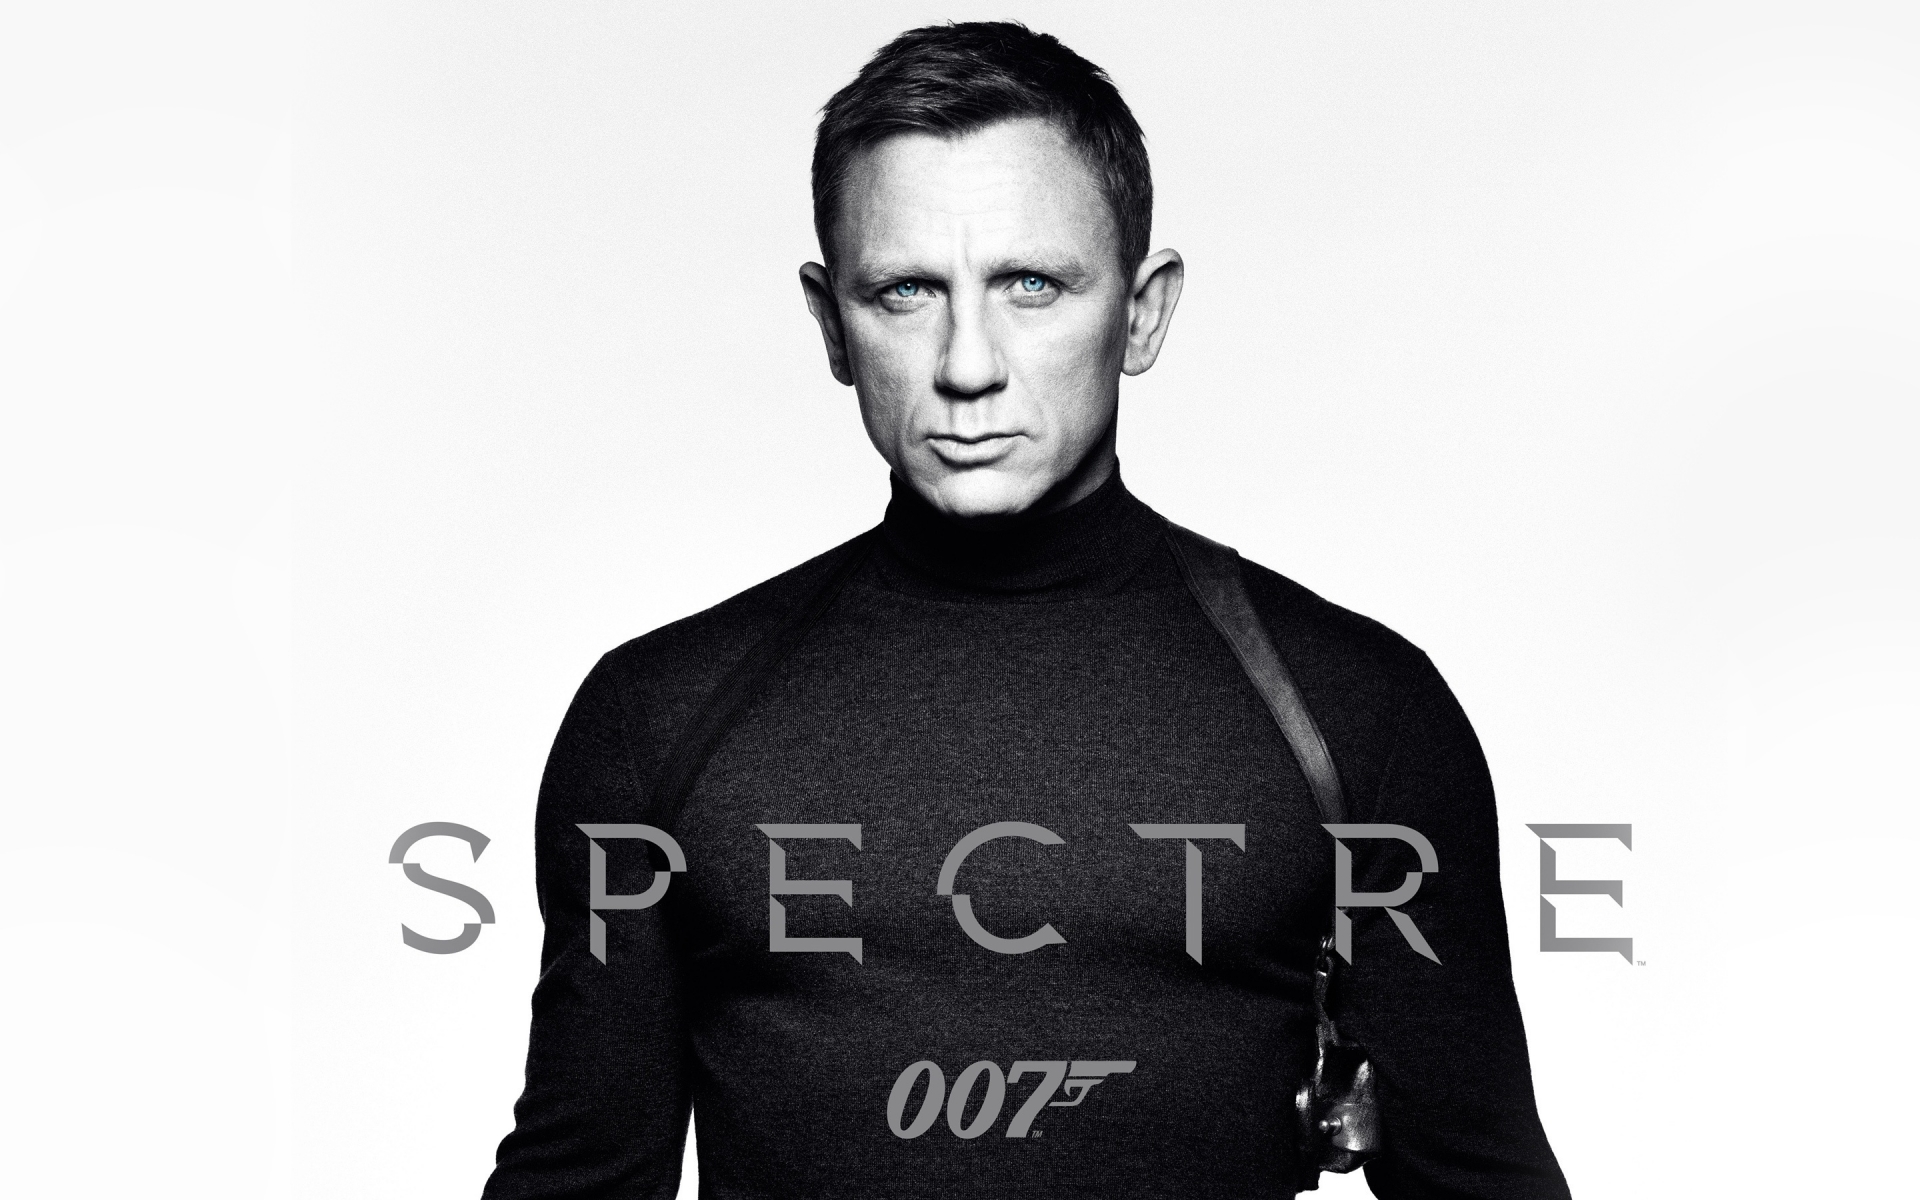 Spectre James Bond 007 for 1920 x 1200 widescreen resolution